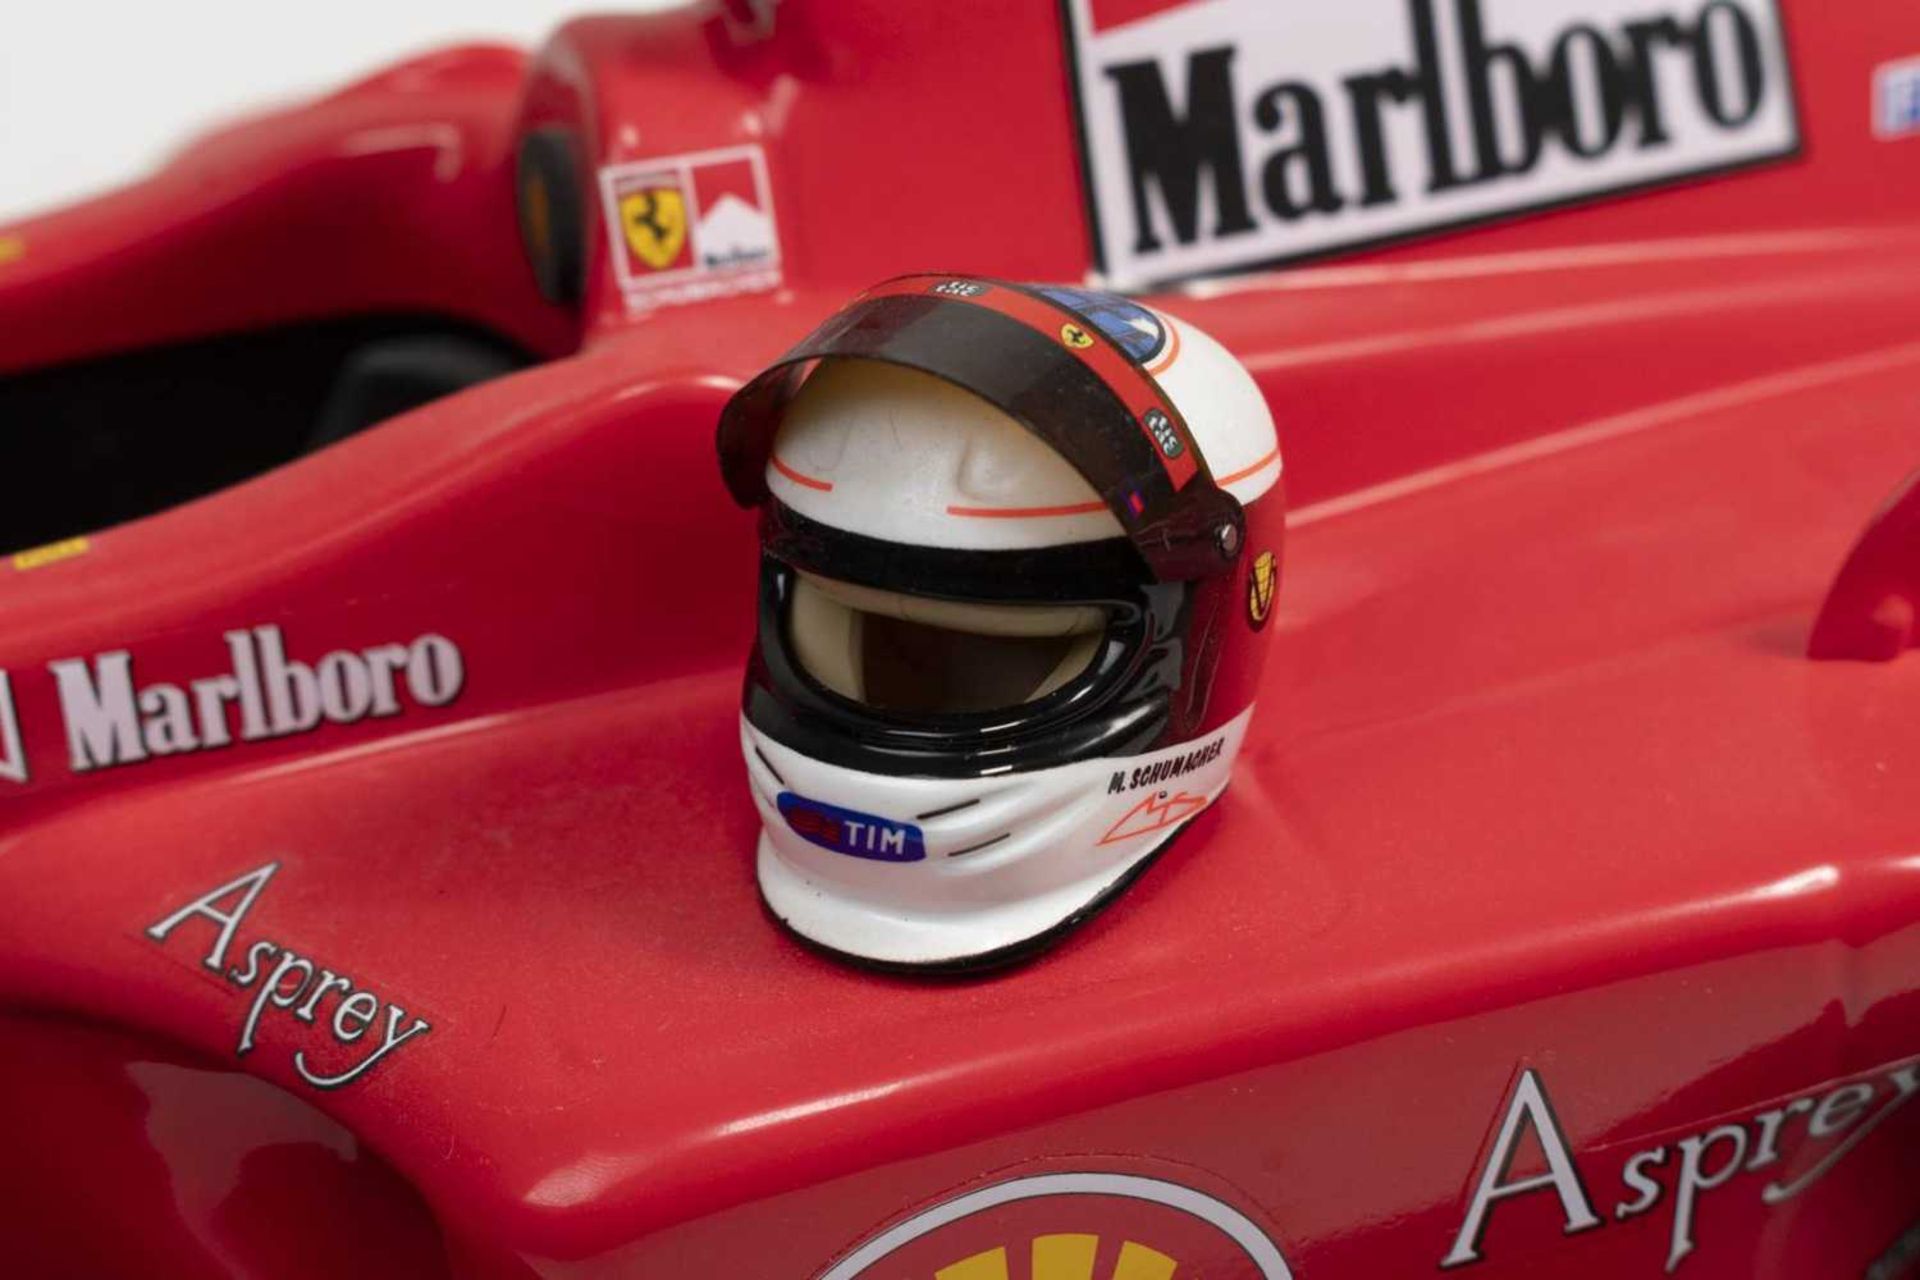 1998, FERRARI F 300 im Großmaßstab 1:8, Fahrer Michael Schumacher, Start Nr. 3, limitierte Auflage 1 - Bild 2 aus 6